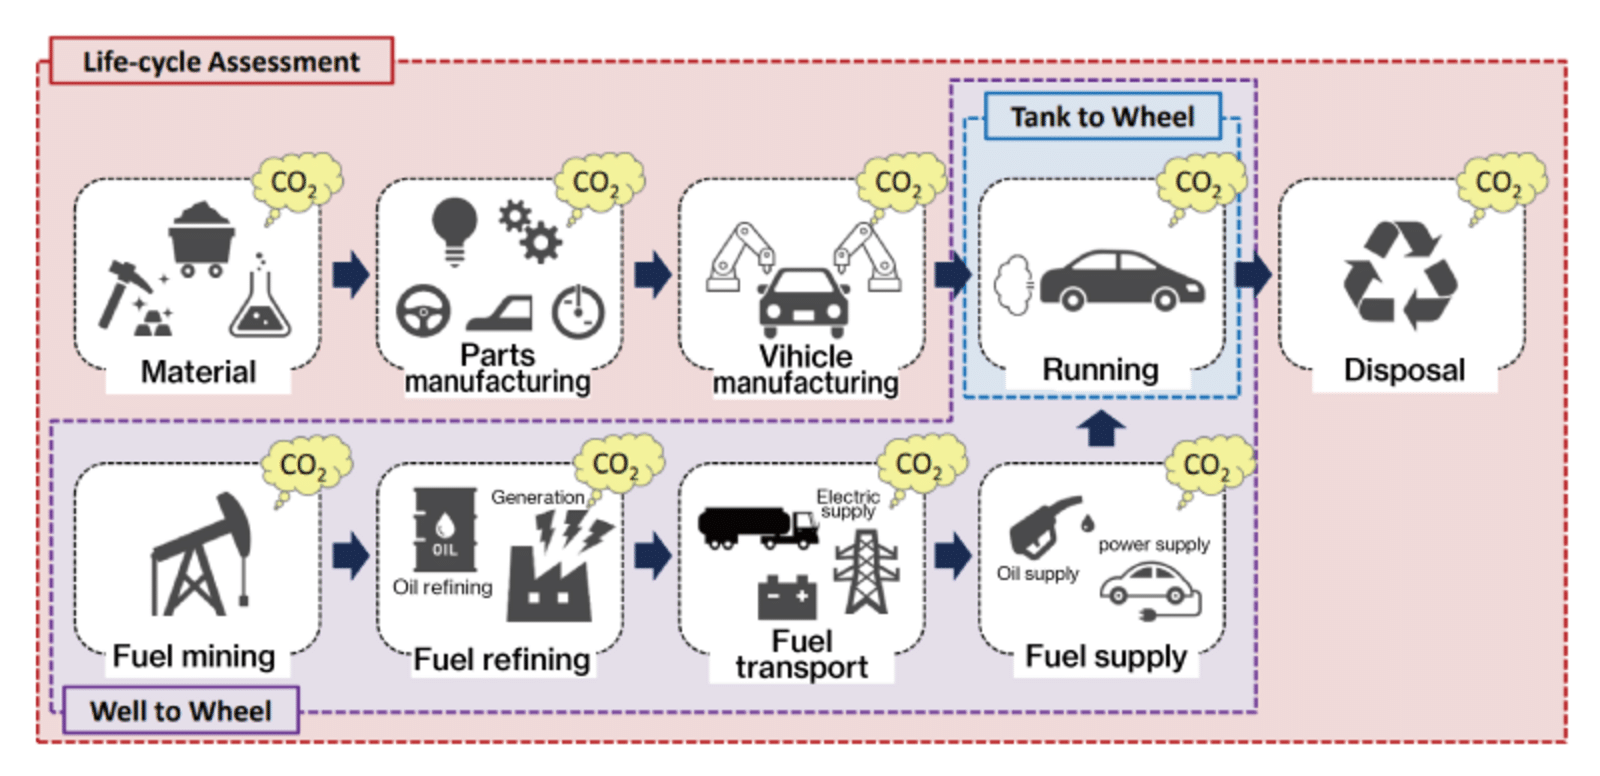 Otomobil için LCA örneği kapsam 3 emisyonları